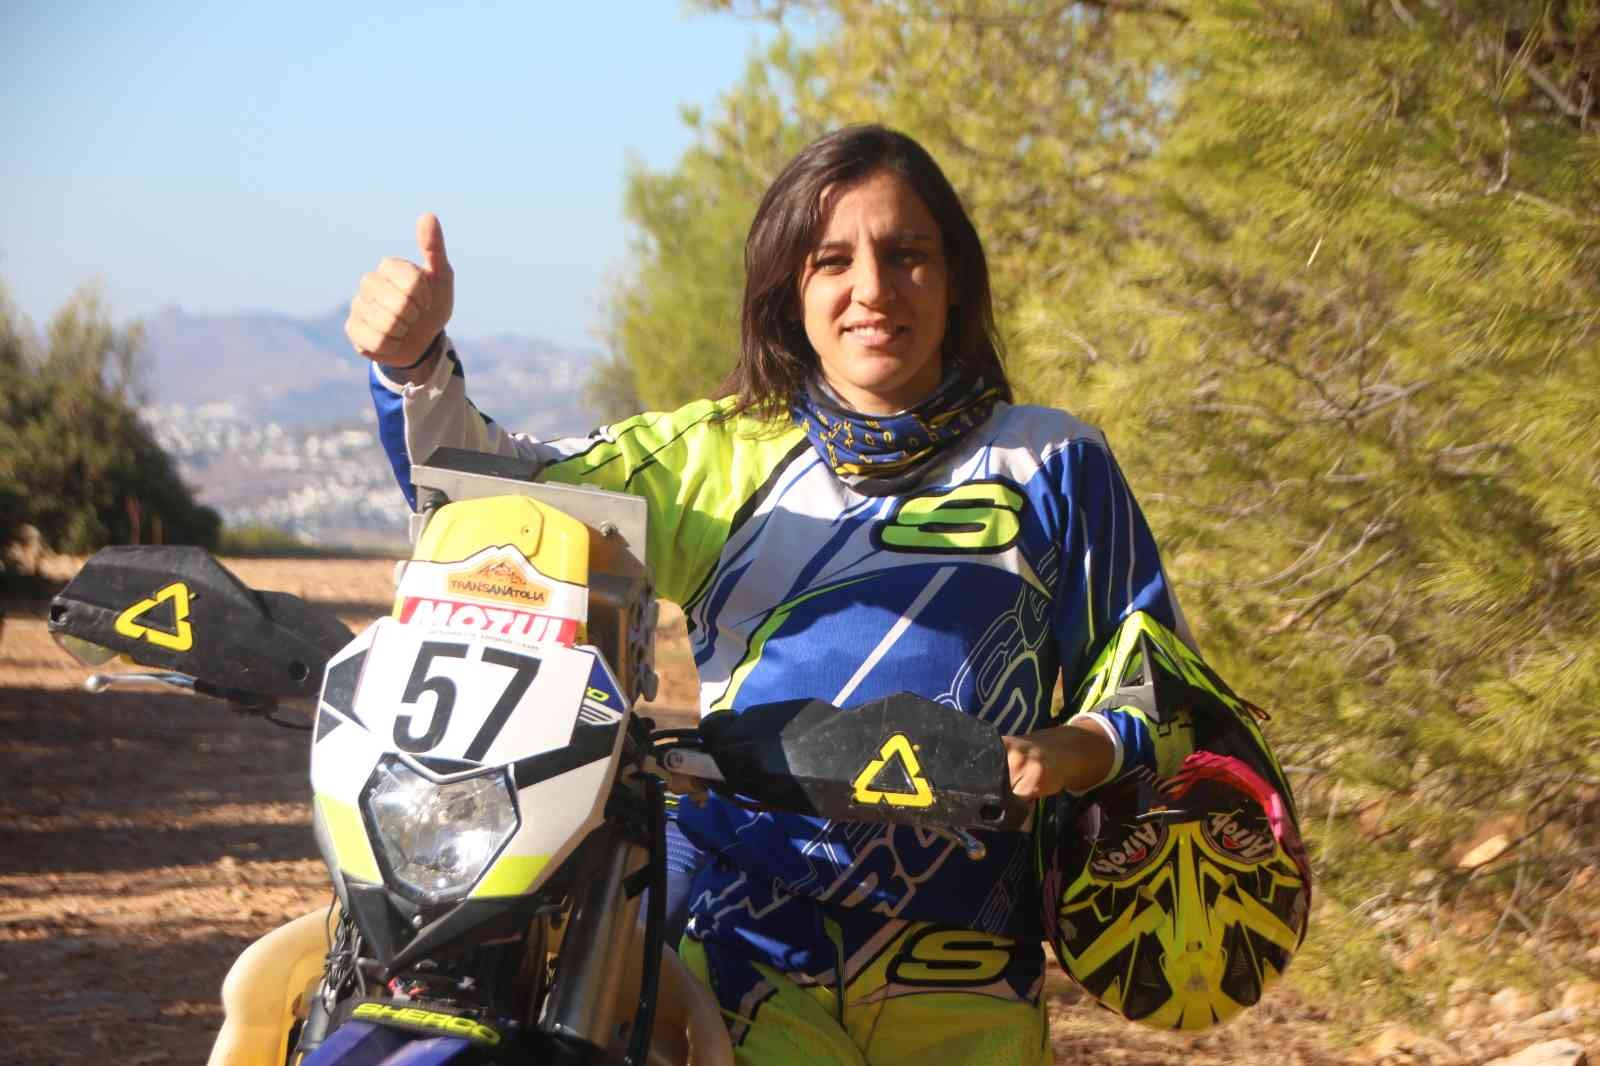 Kadın motorcu motosiklet tutkusunu toprak pistlere taşıdı #mugla